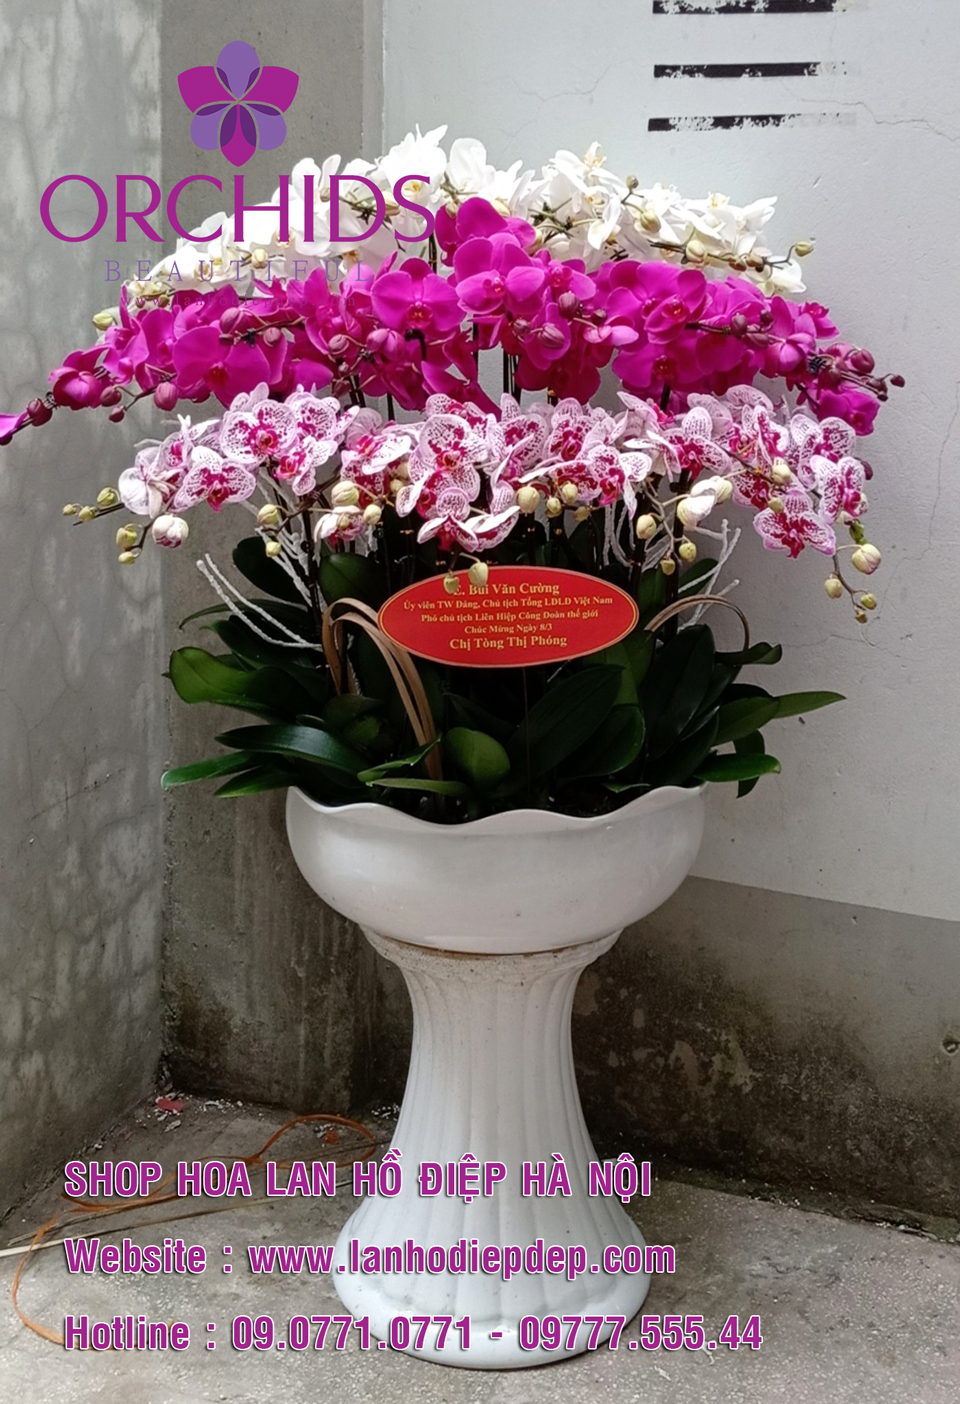 Shop hoa lan giá rẻ tại Hà Nội